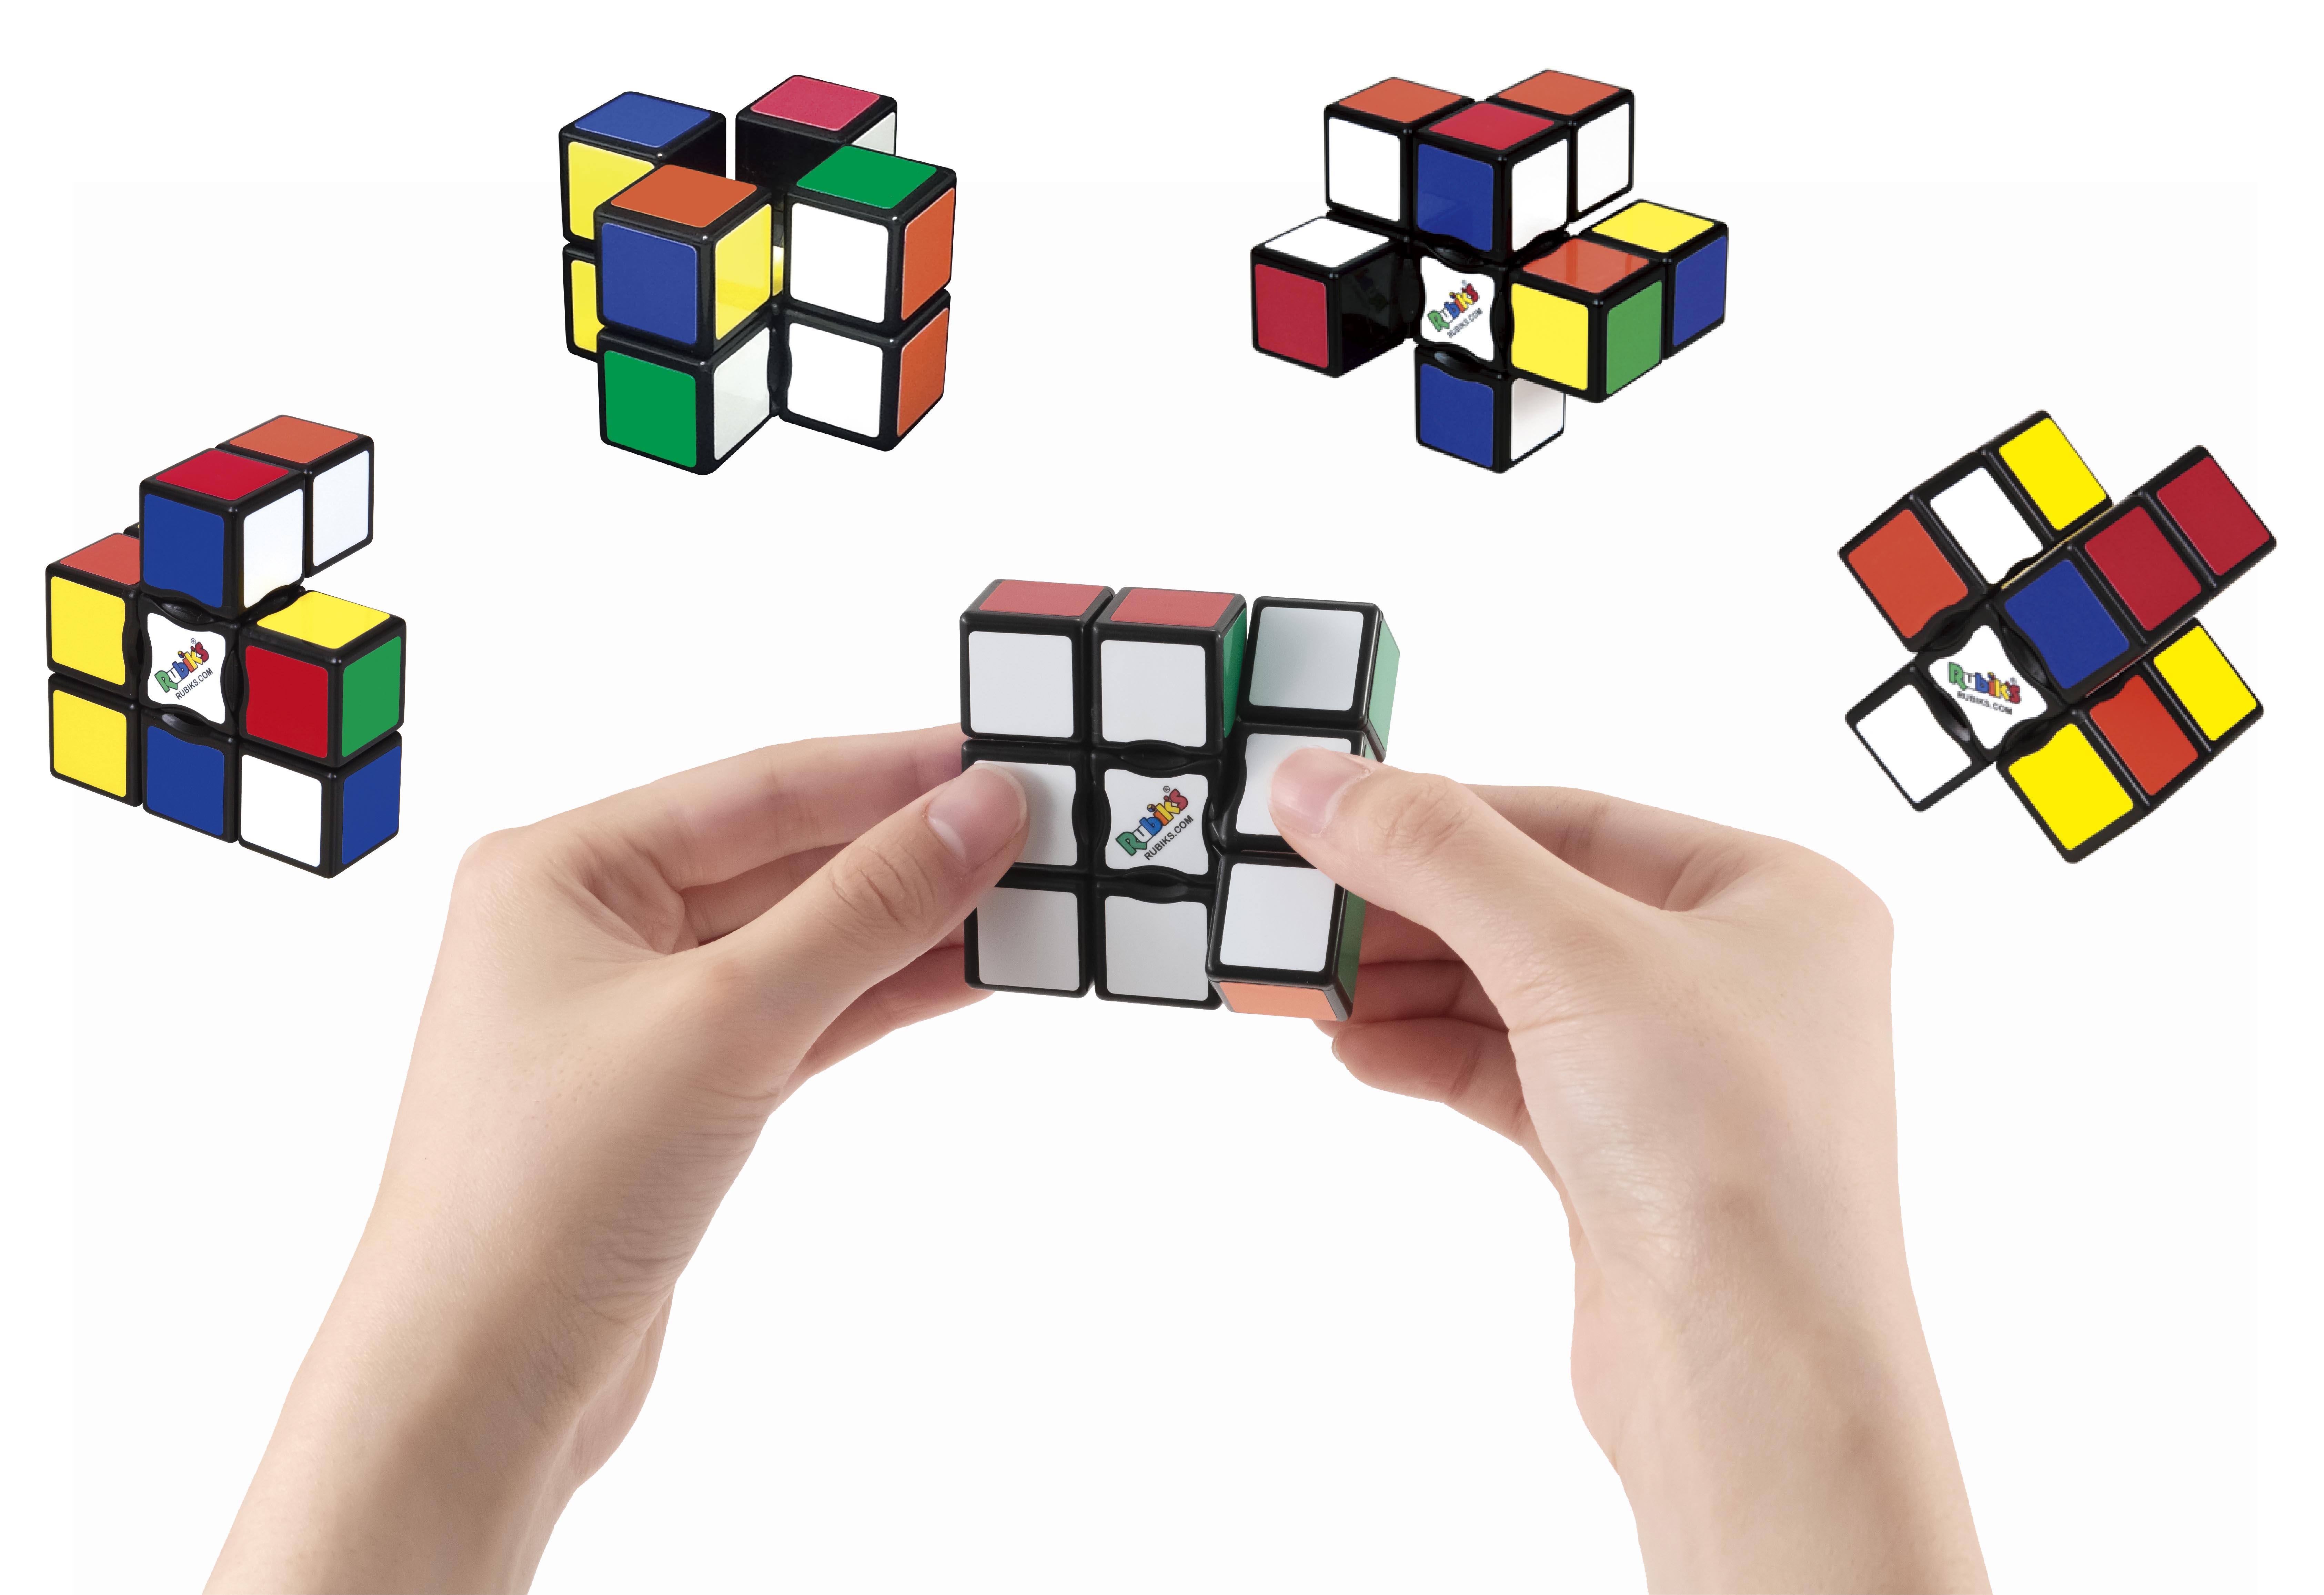 史上最薄の6面立体パズル フラットなルービックキューブ 回転すると色だけでなく形も変わる メガハウスのプレスリリース